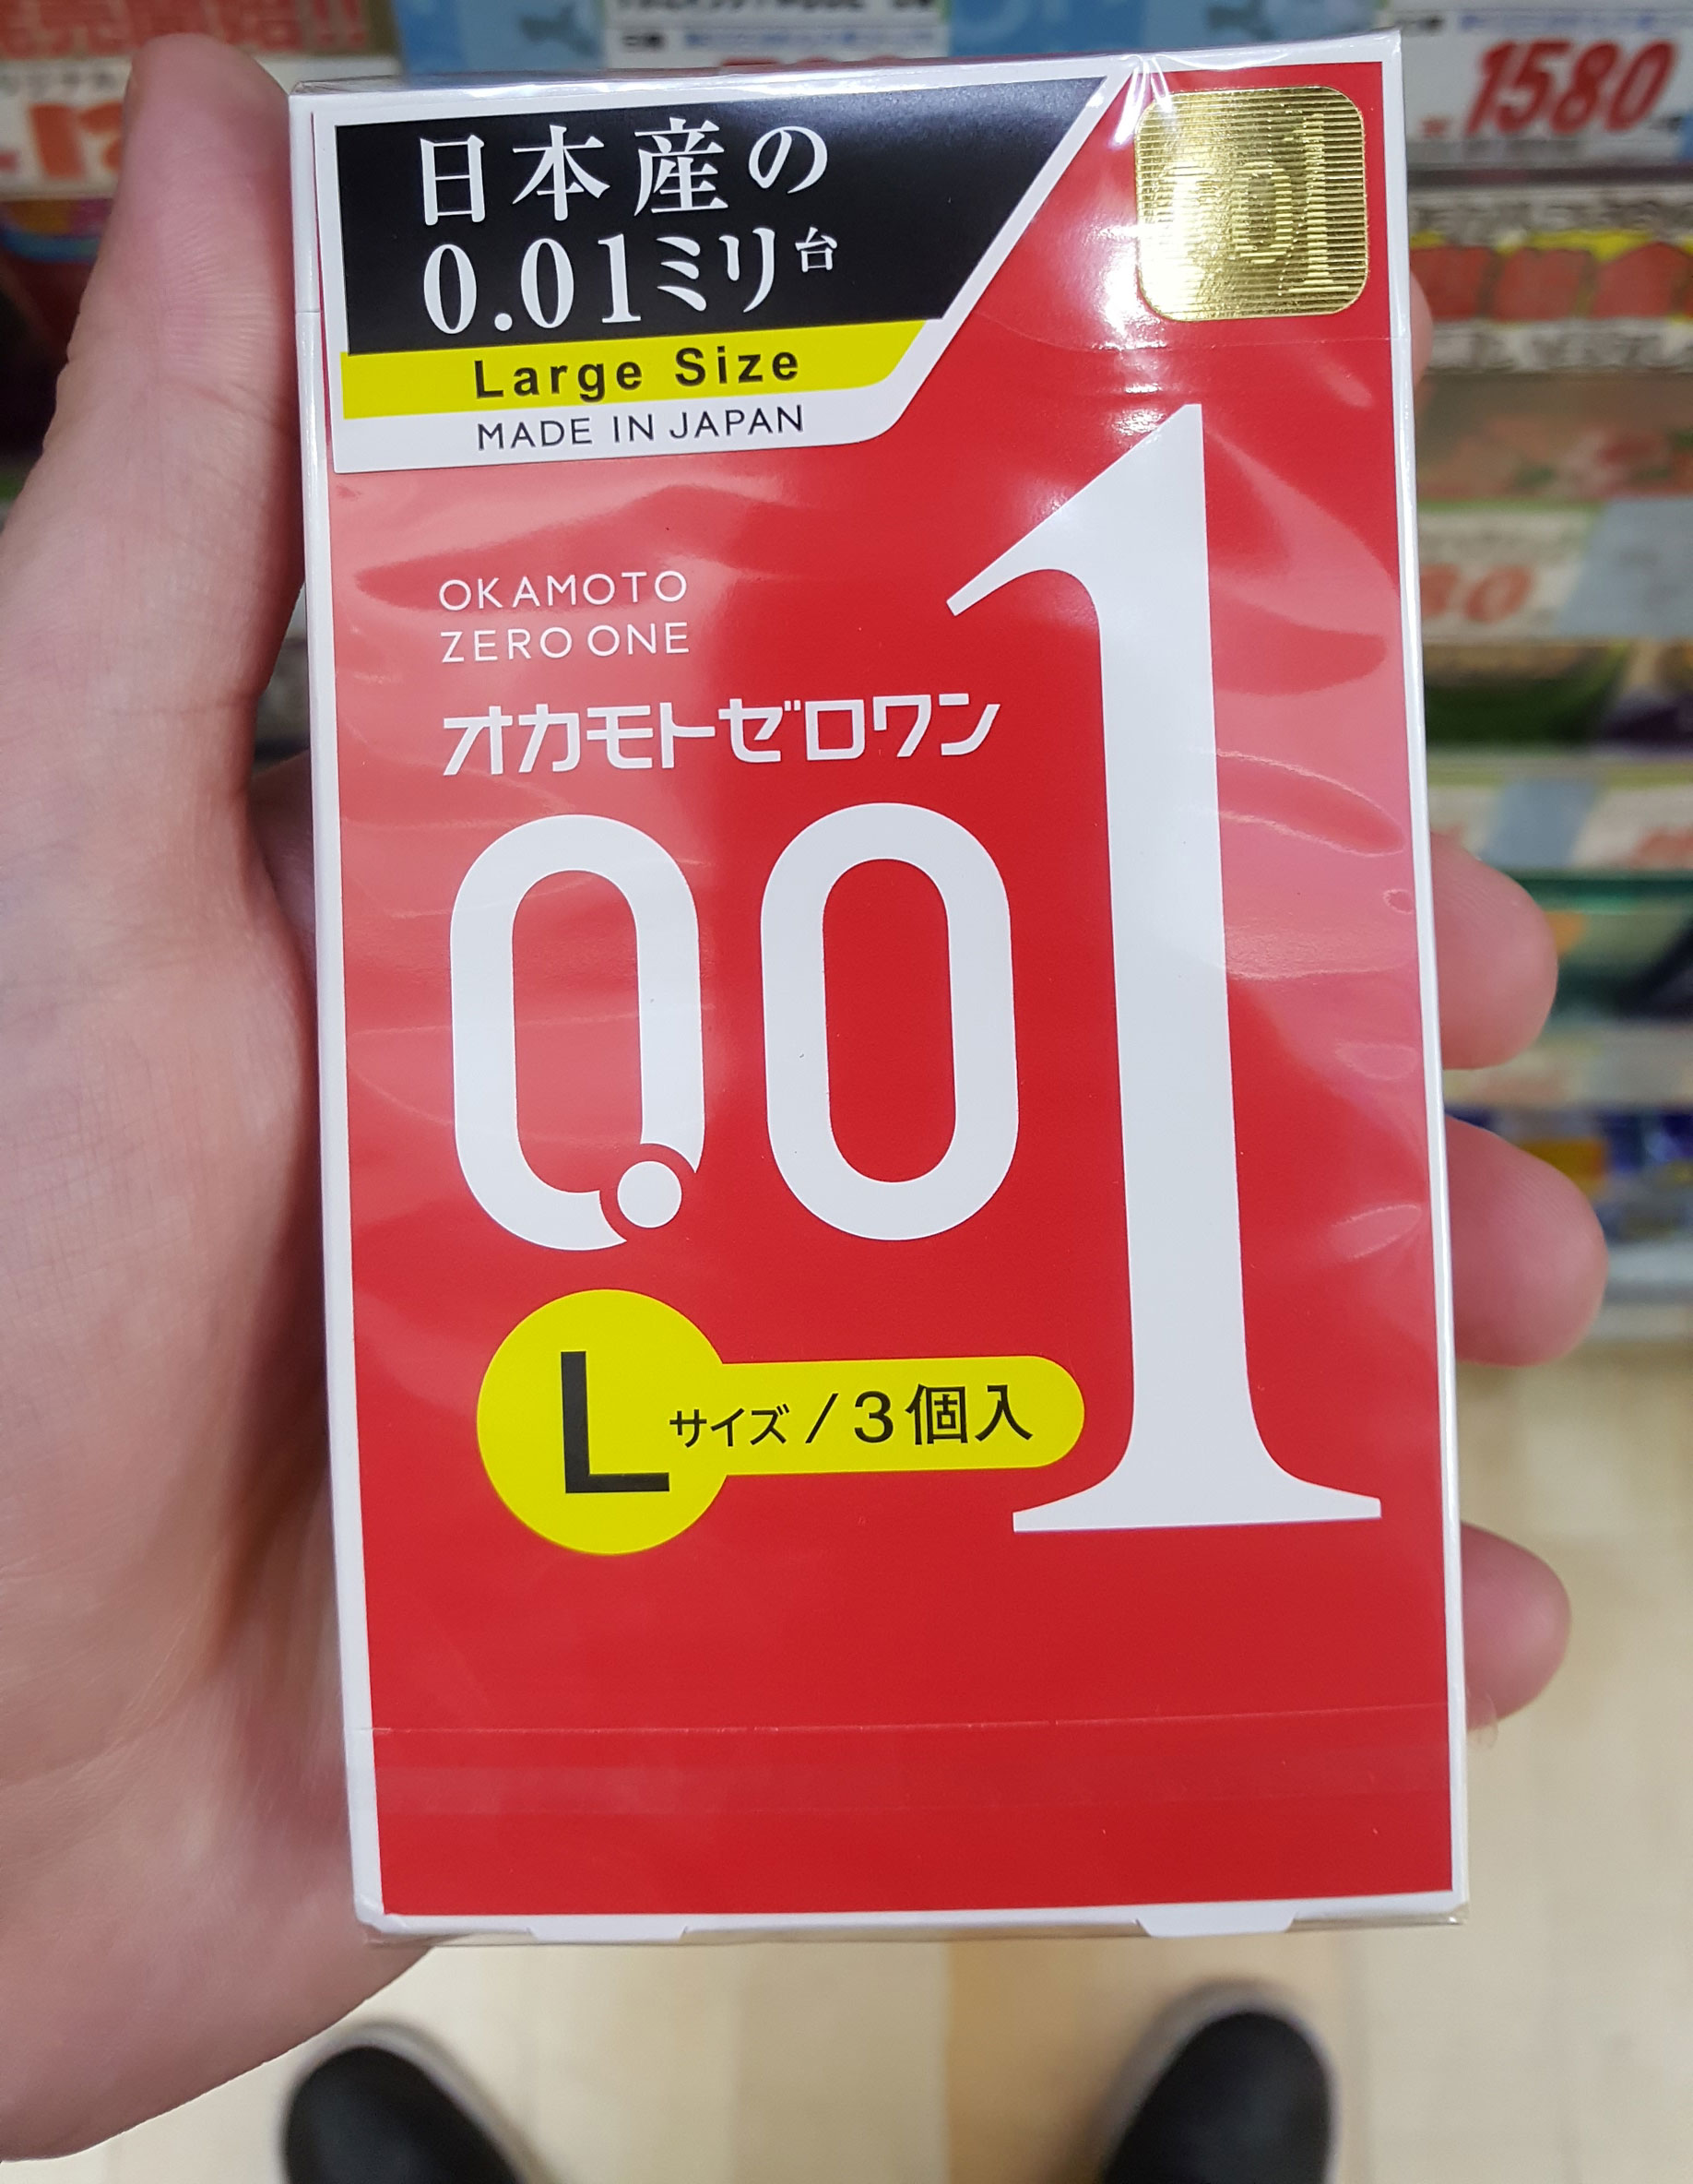 Die extra dünnen, japanischen Polyurethan-Kondome gibt es auch in Größe L und sollten für die meisten deutschen Männer passen.